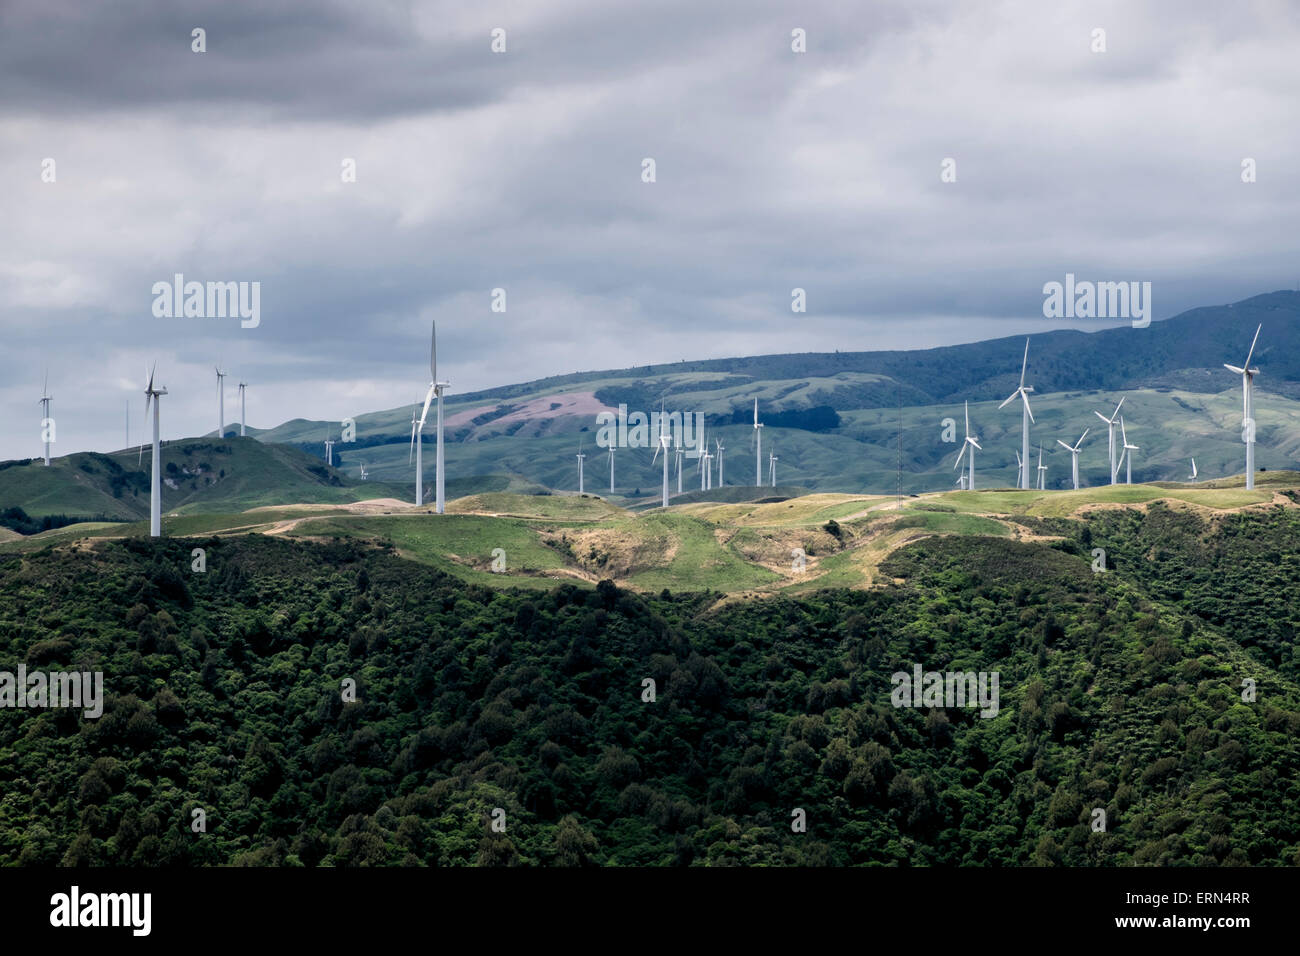 Las turbinas de generación de electricidad en el meridiano de energía en parques eólicos Te Apiti, Manawatu Gorge, Nueva Zelanda. Foto de stock